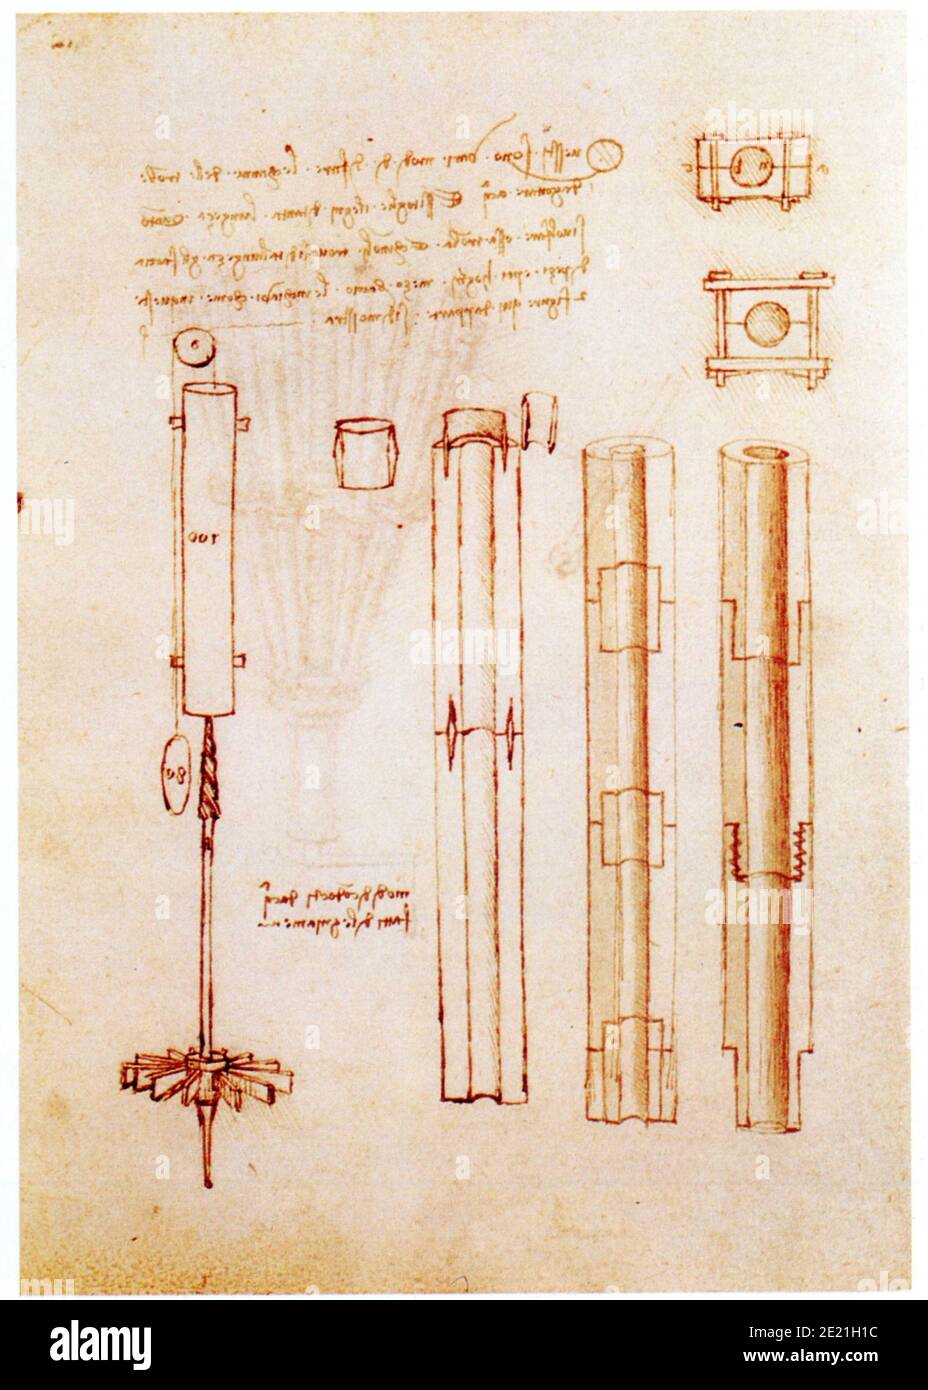 Léonard de Vinci. 1452-1519. Tubes de bois modulaires pour conduites d'eau Banque D'Images